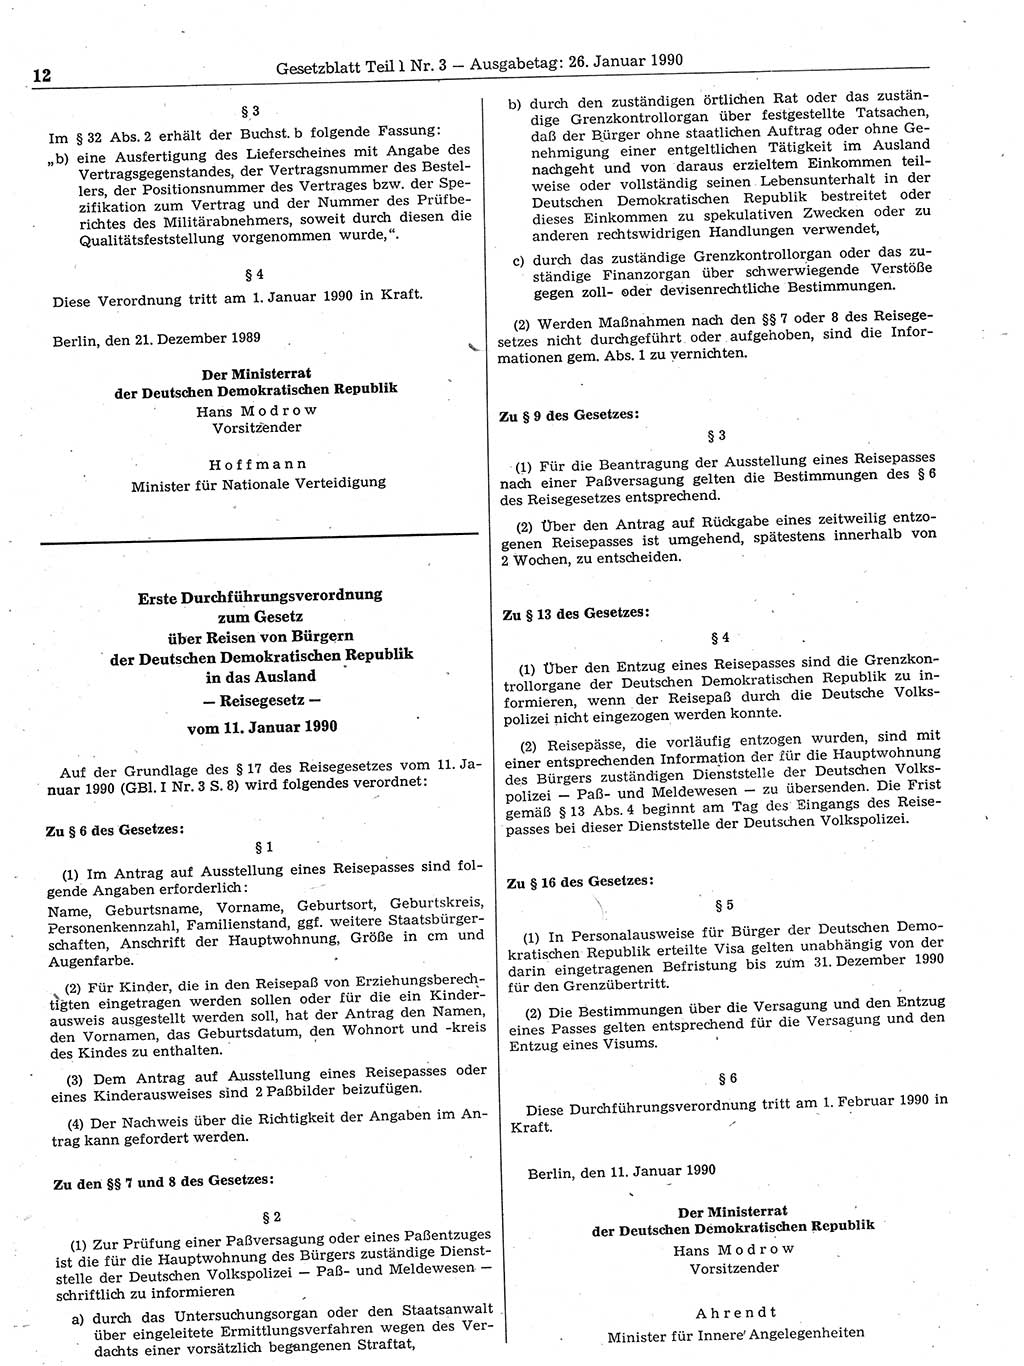 Gesetzblatt (GBl.) der Deutschen Demokratischen Republik (DDR) Teil Ⅰ 1990, Seite 12 (GBl. DDR Ⅰ 1990, S. 12)